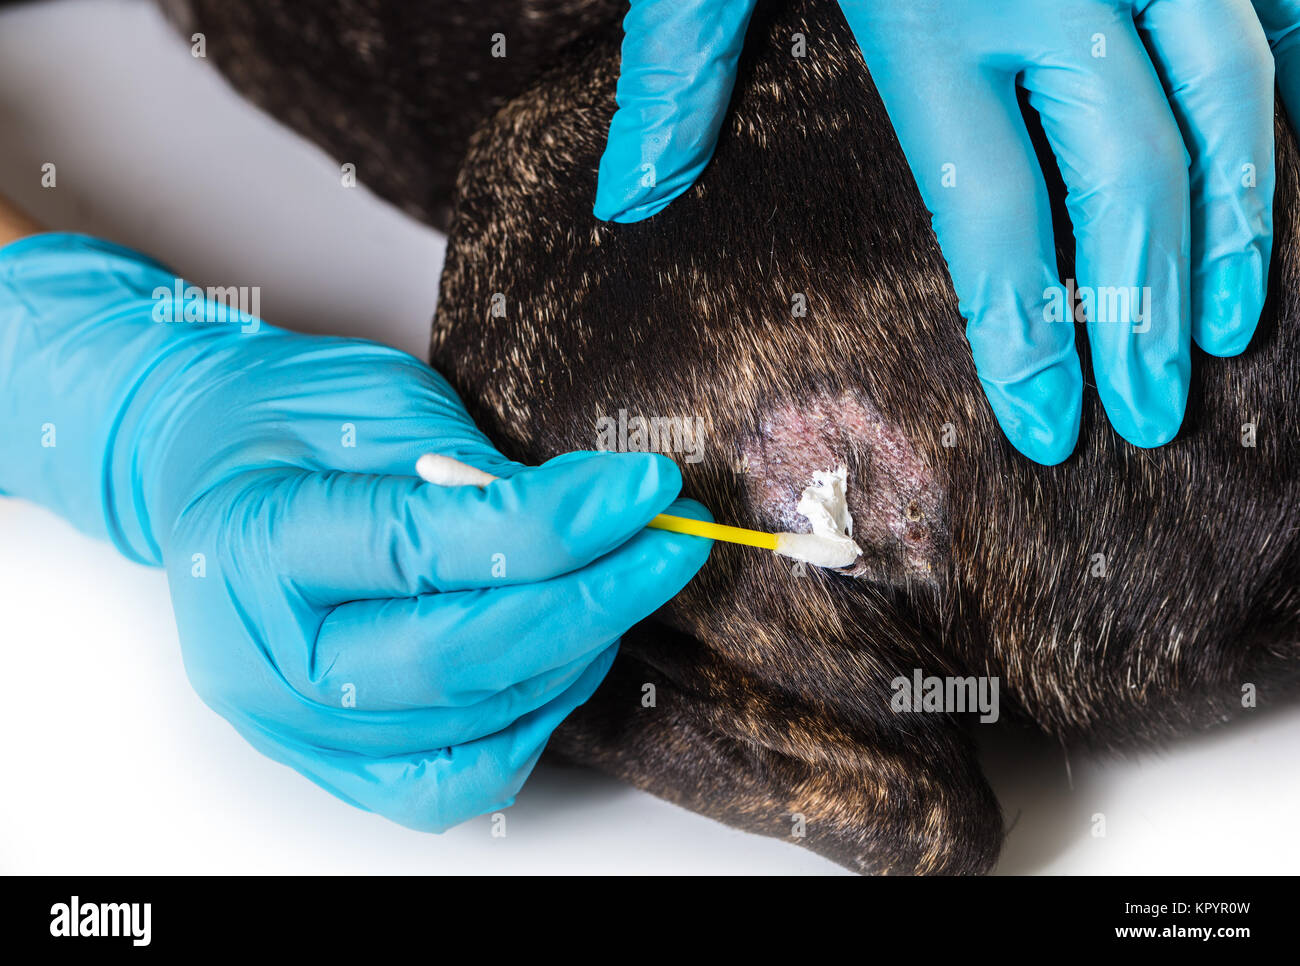 Veterinario trata enfermedades de la piel de un perro bulldog francés Foto de stock